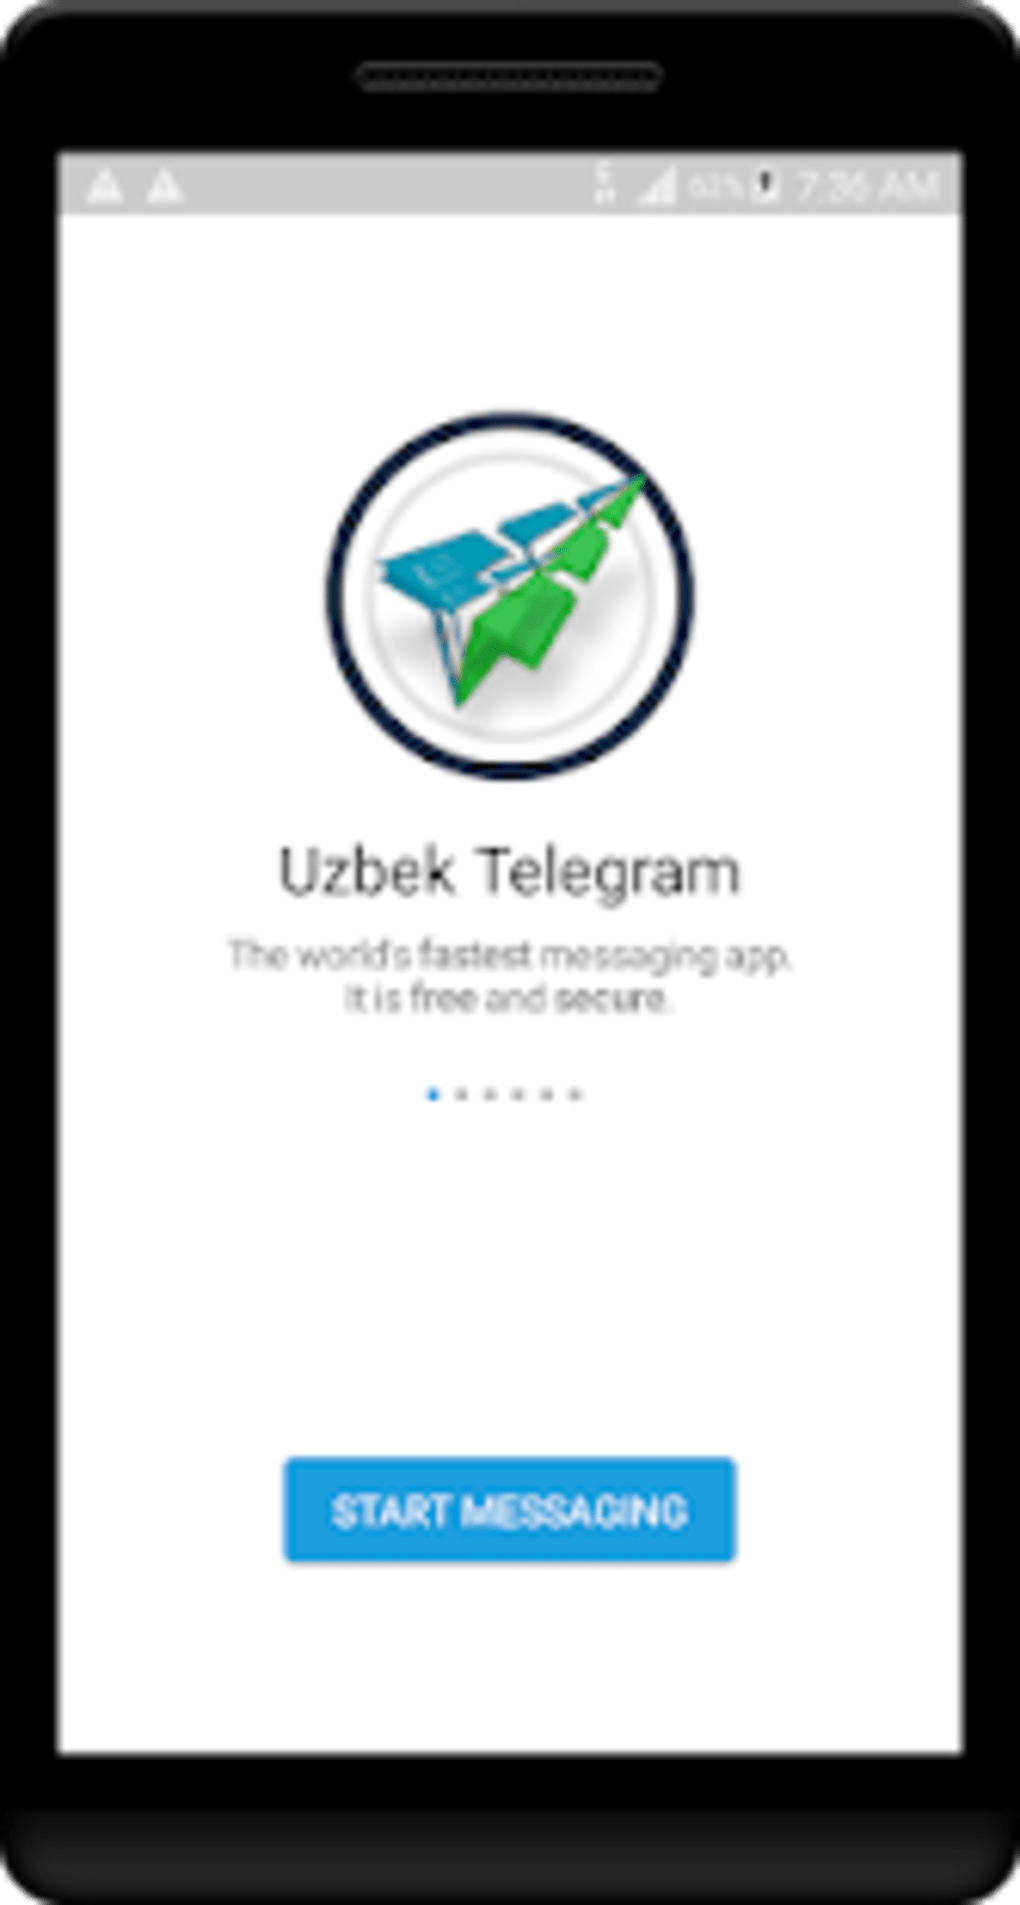 Скачать телеграмм на андроид на русском бесплатно и установить приложение без рекламы фото 114